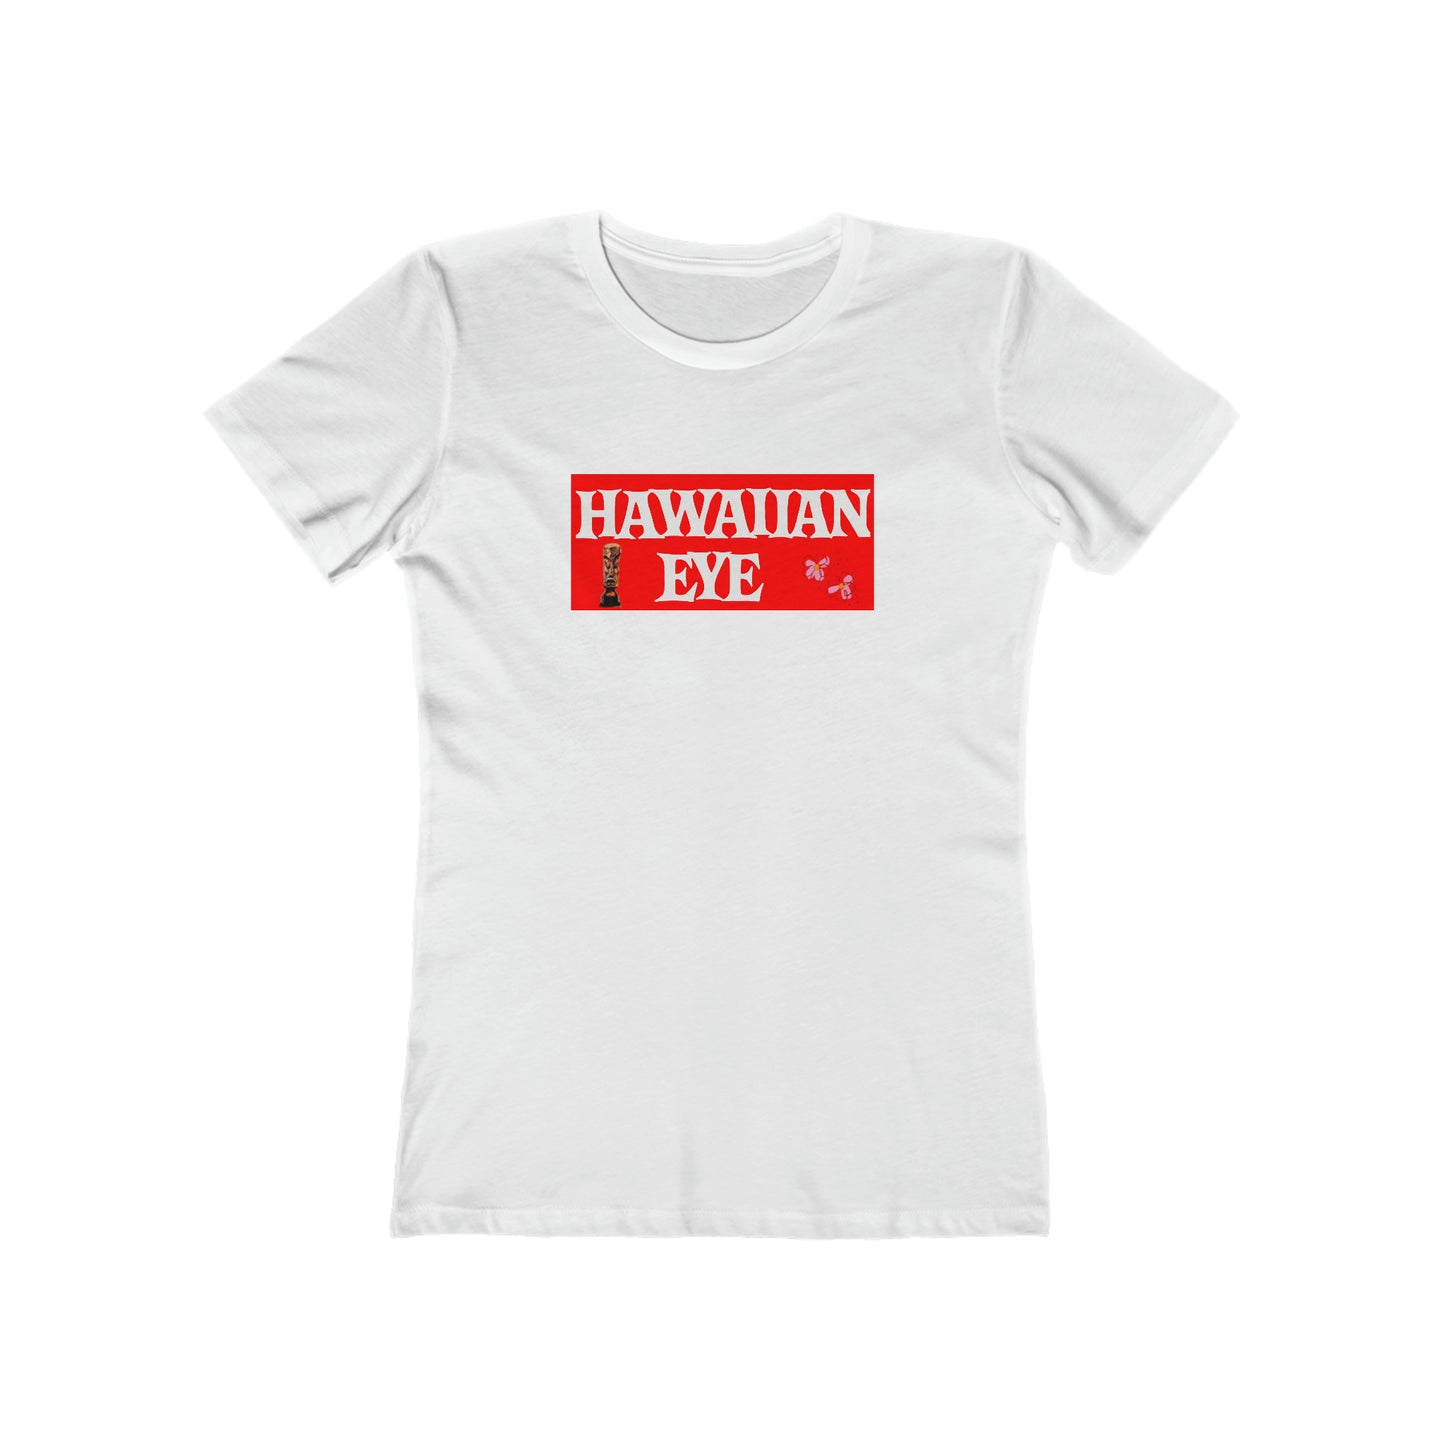 Hawaiian Eye - Women's T-Shirt